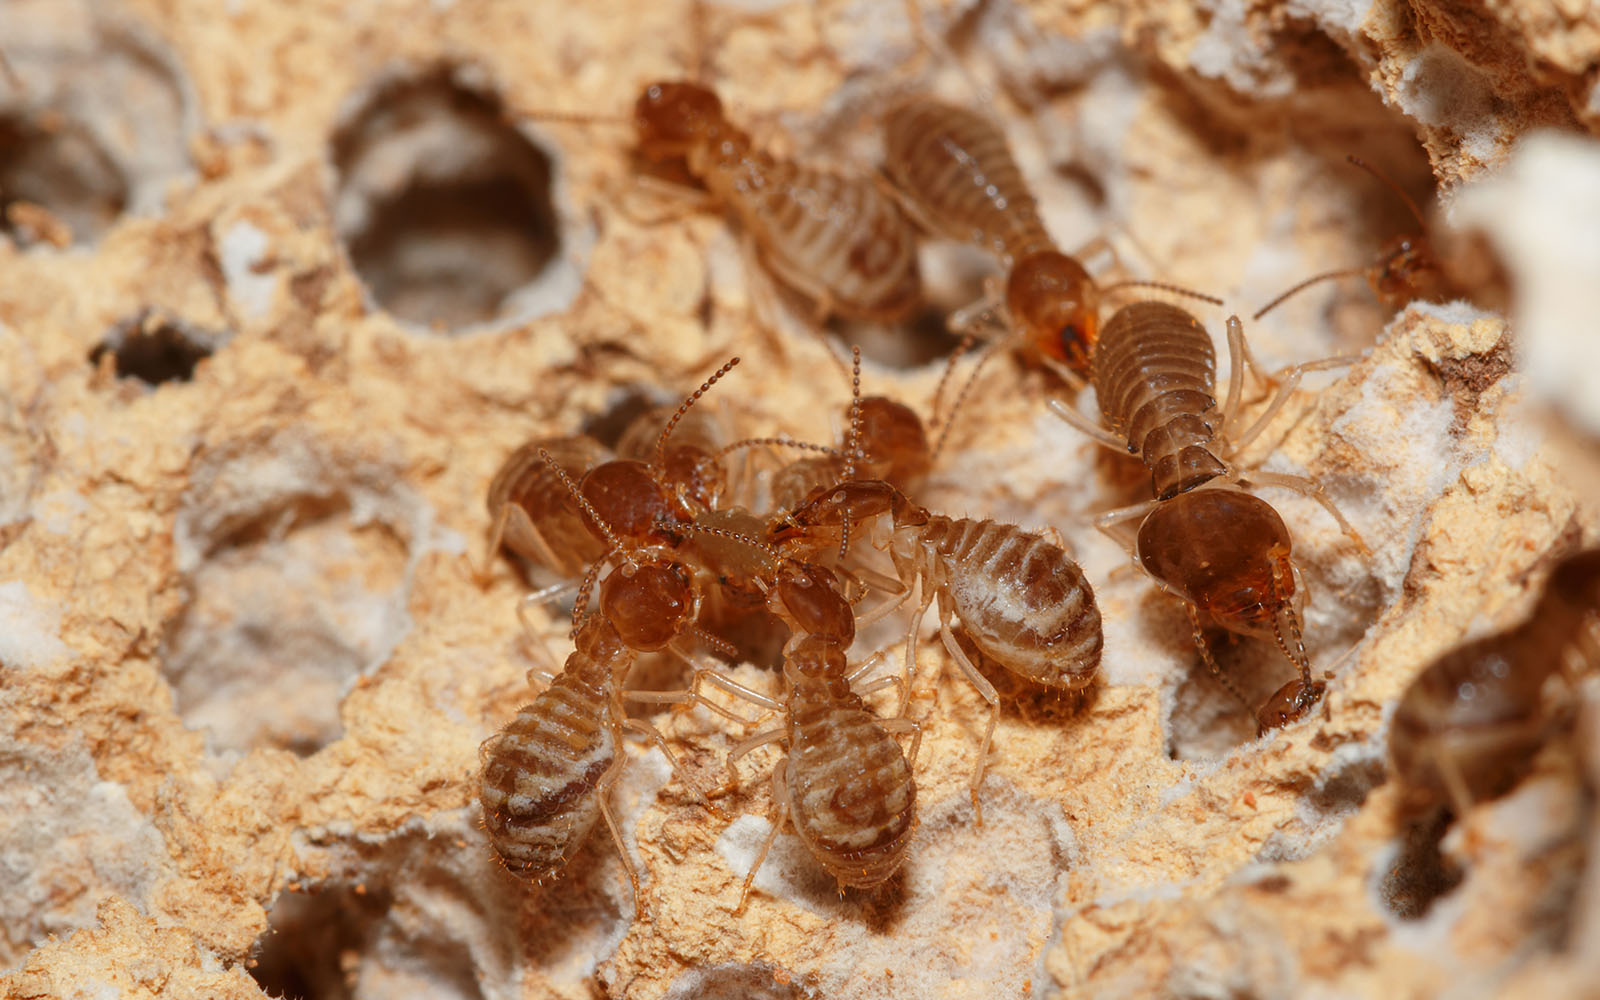 Maximum Pest Control Termites